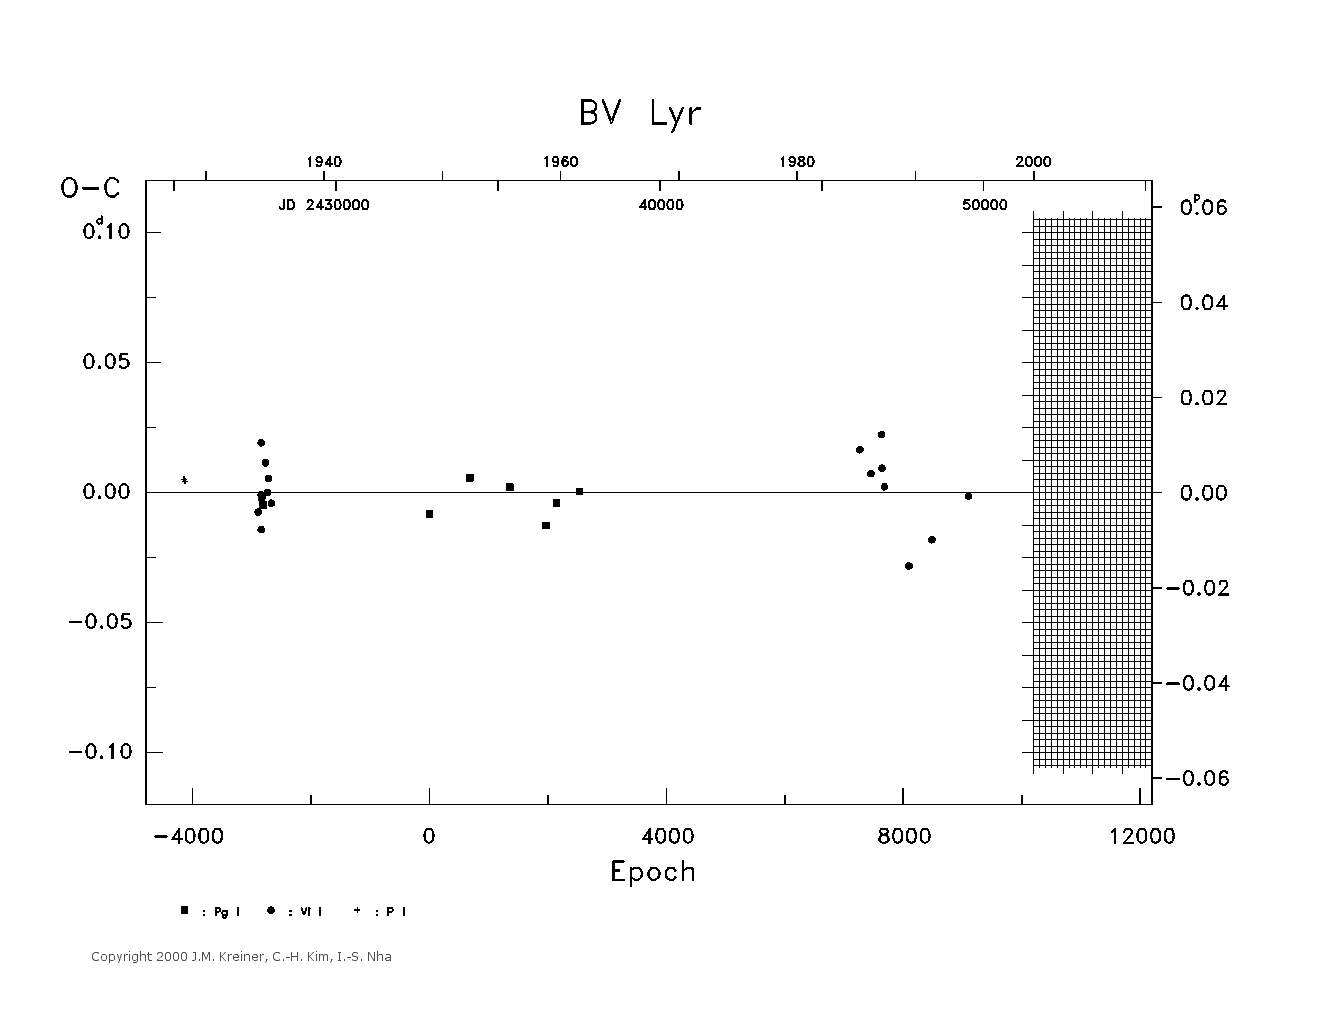 [IMAGE: large BV LYR O-C diagram]